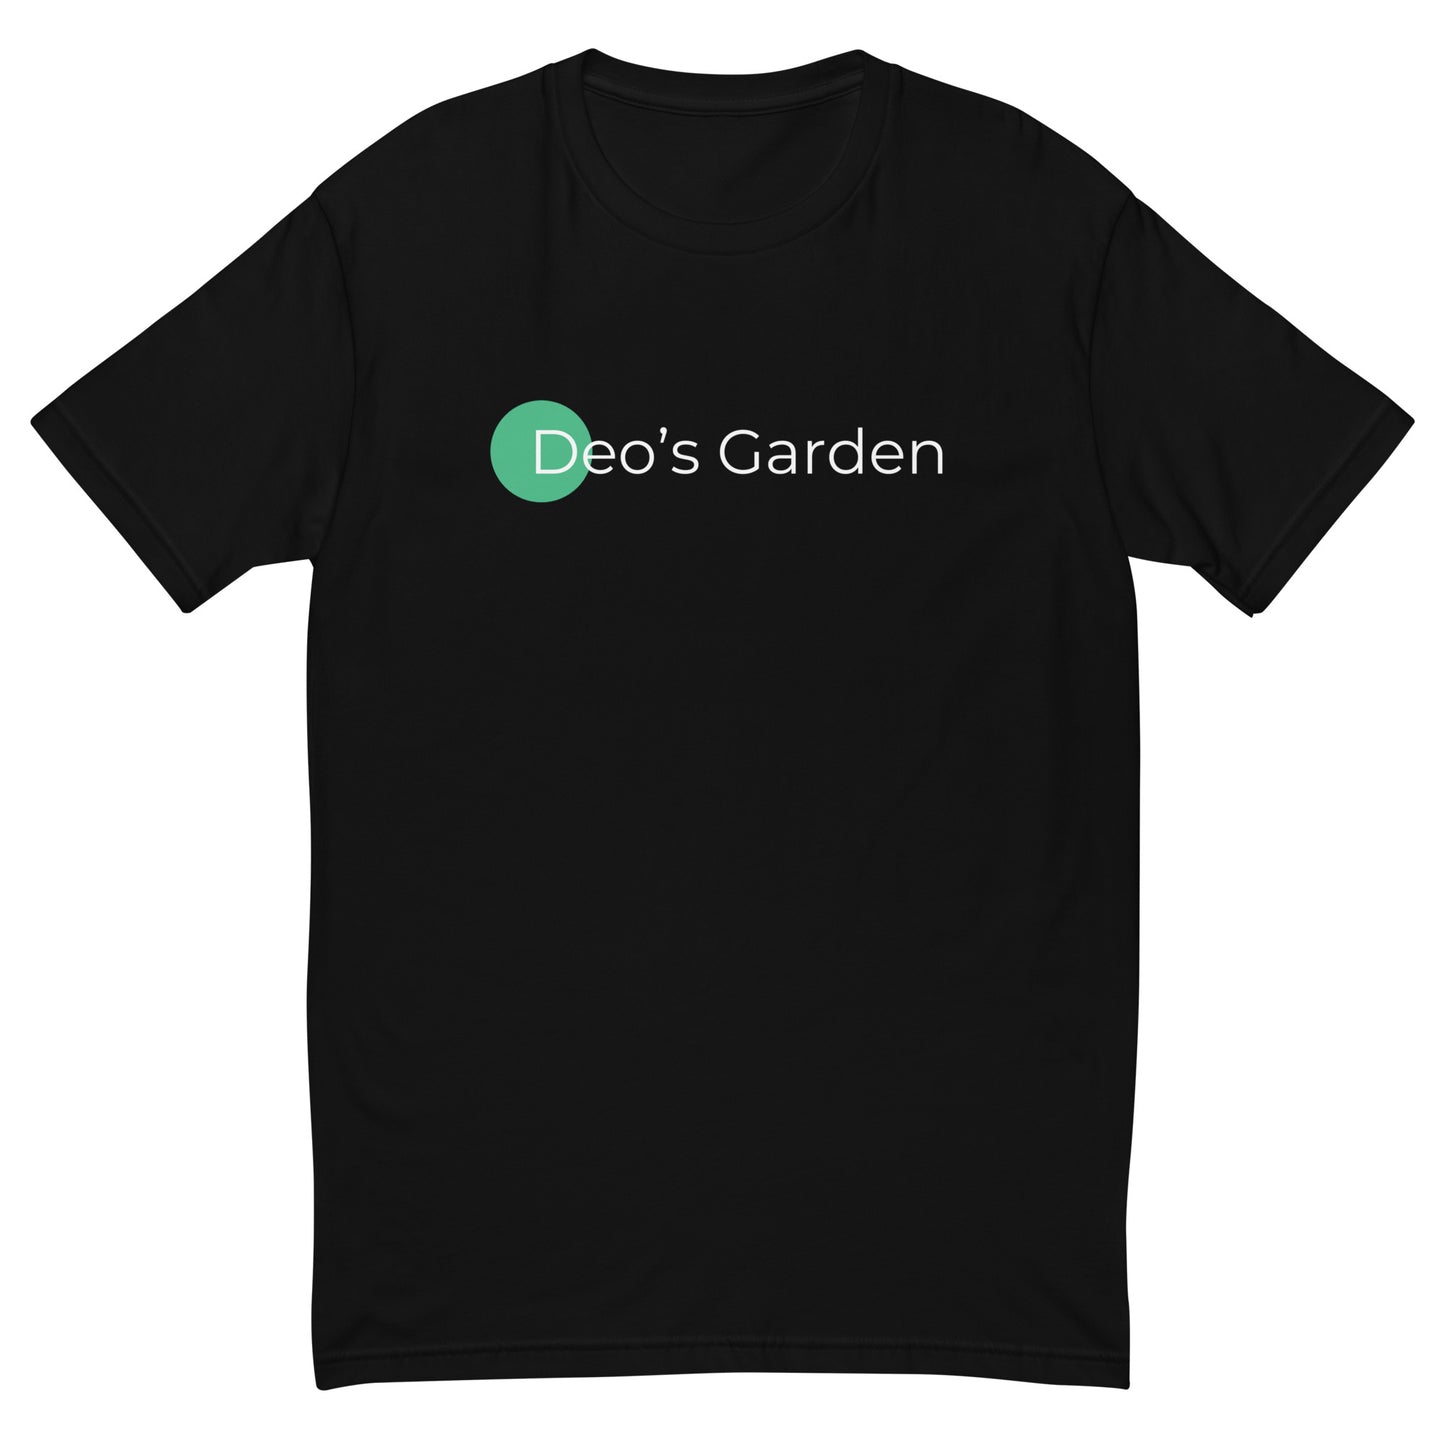 Deo's Garden "Buy Weed From Minorities" Short Sleeve T-shirt